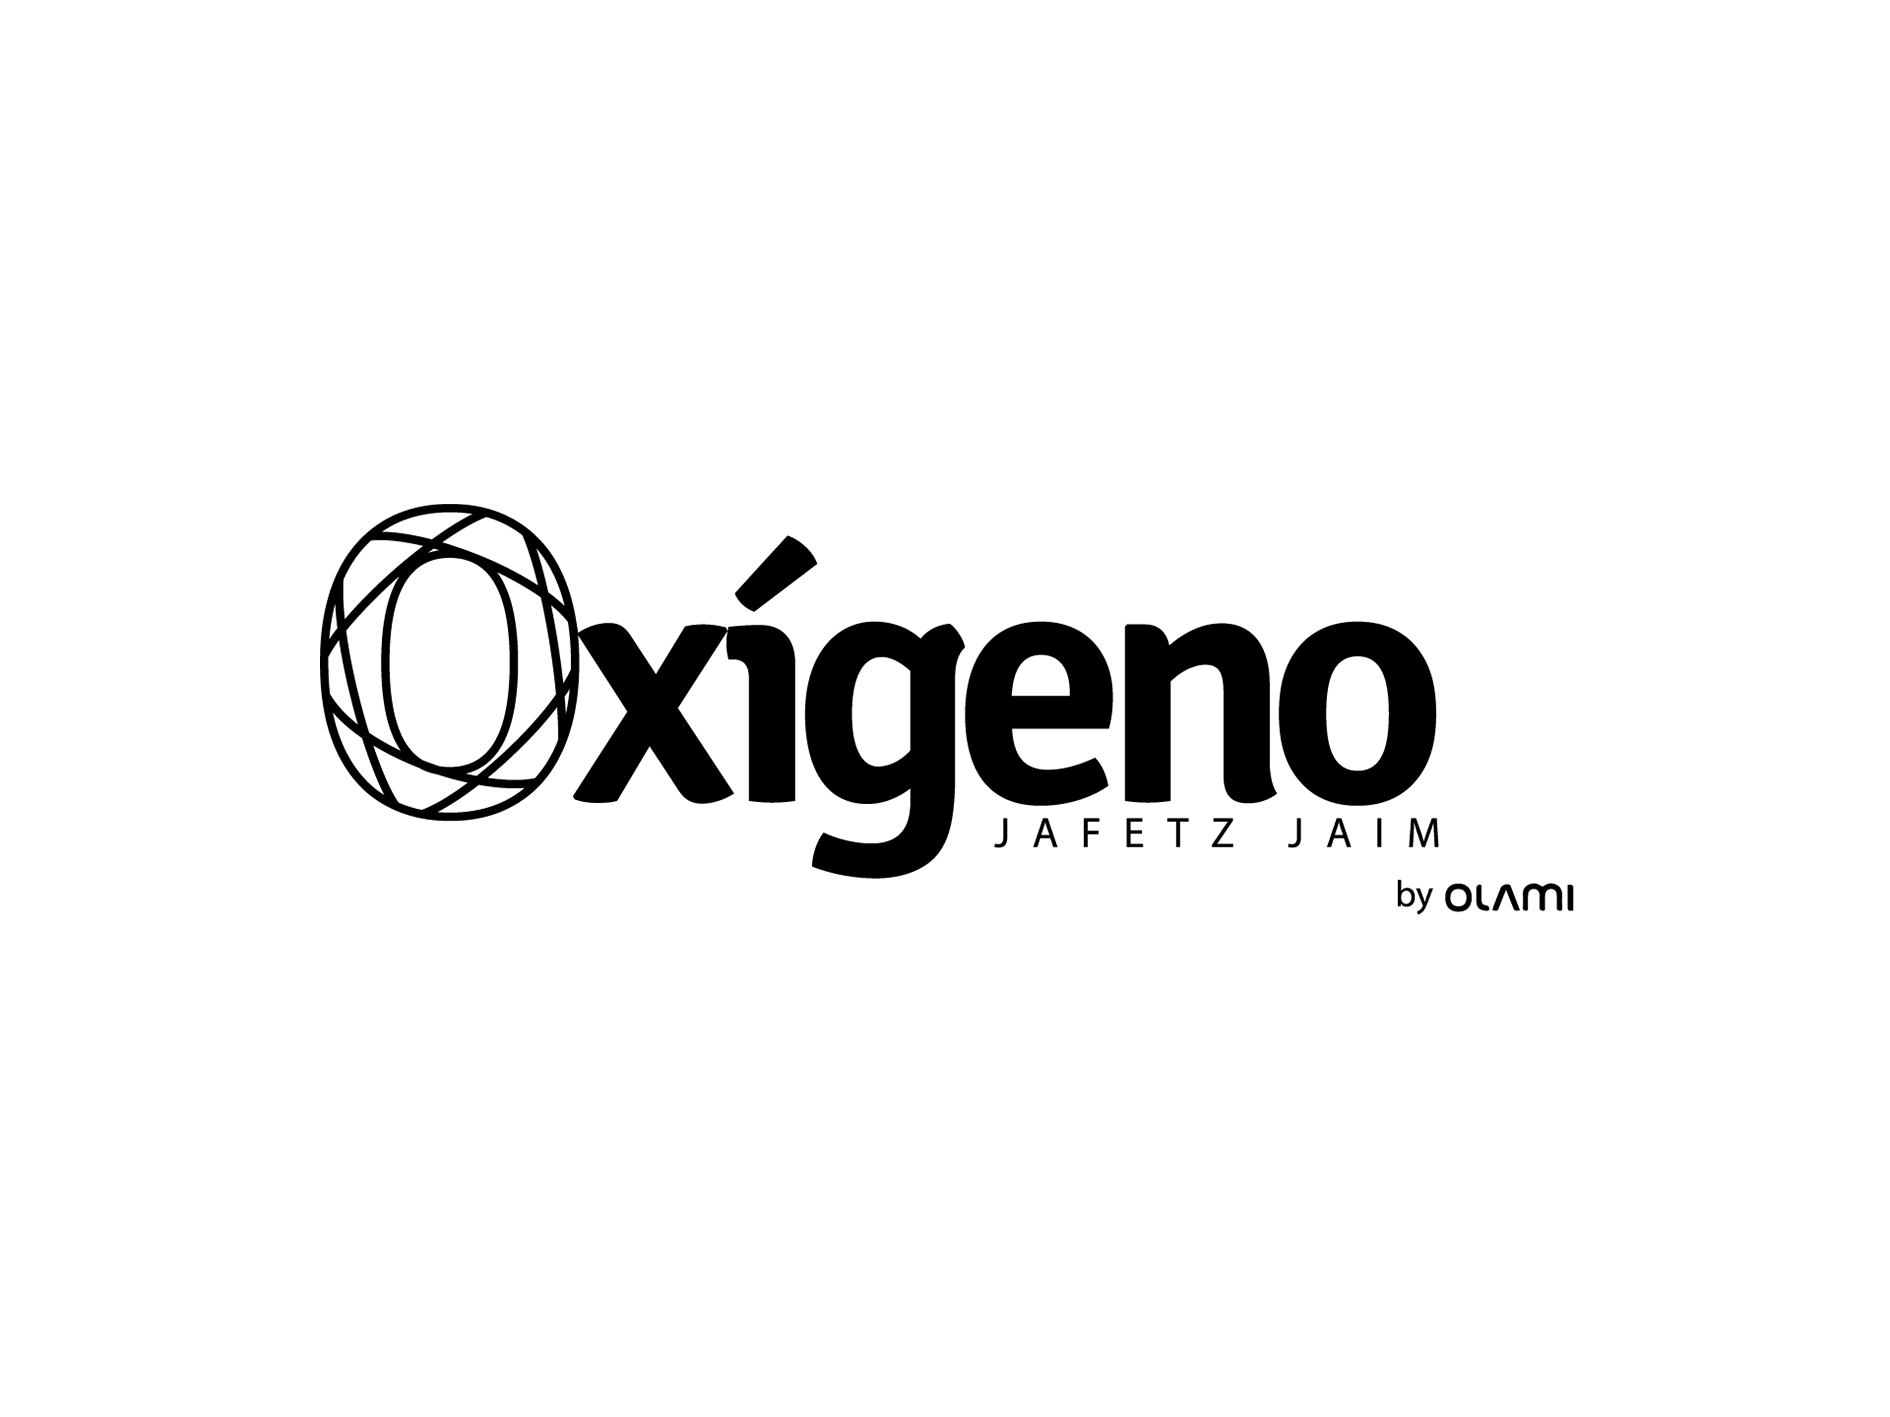 Logo Oxigeno Jafetz Jaim